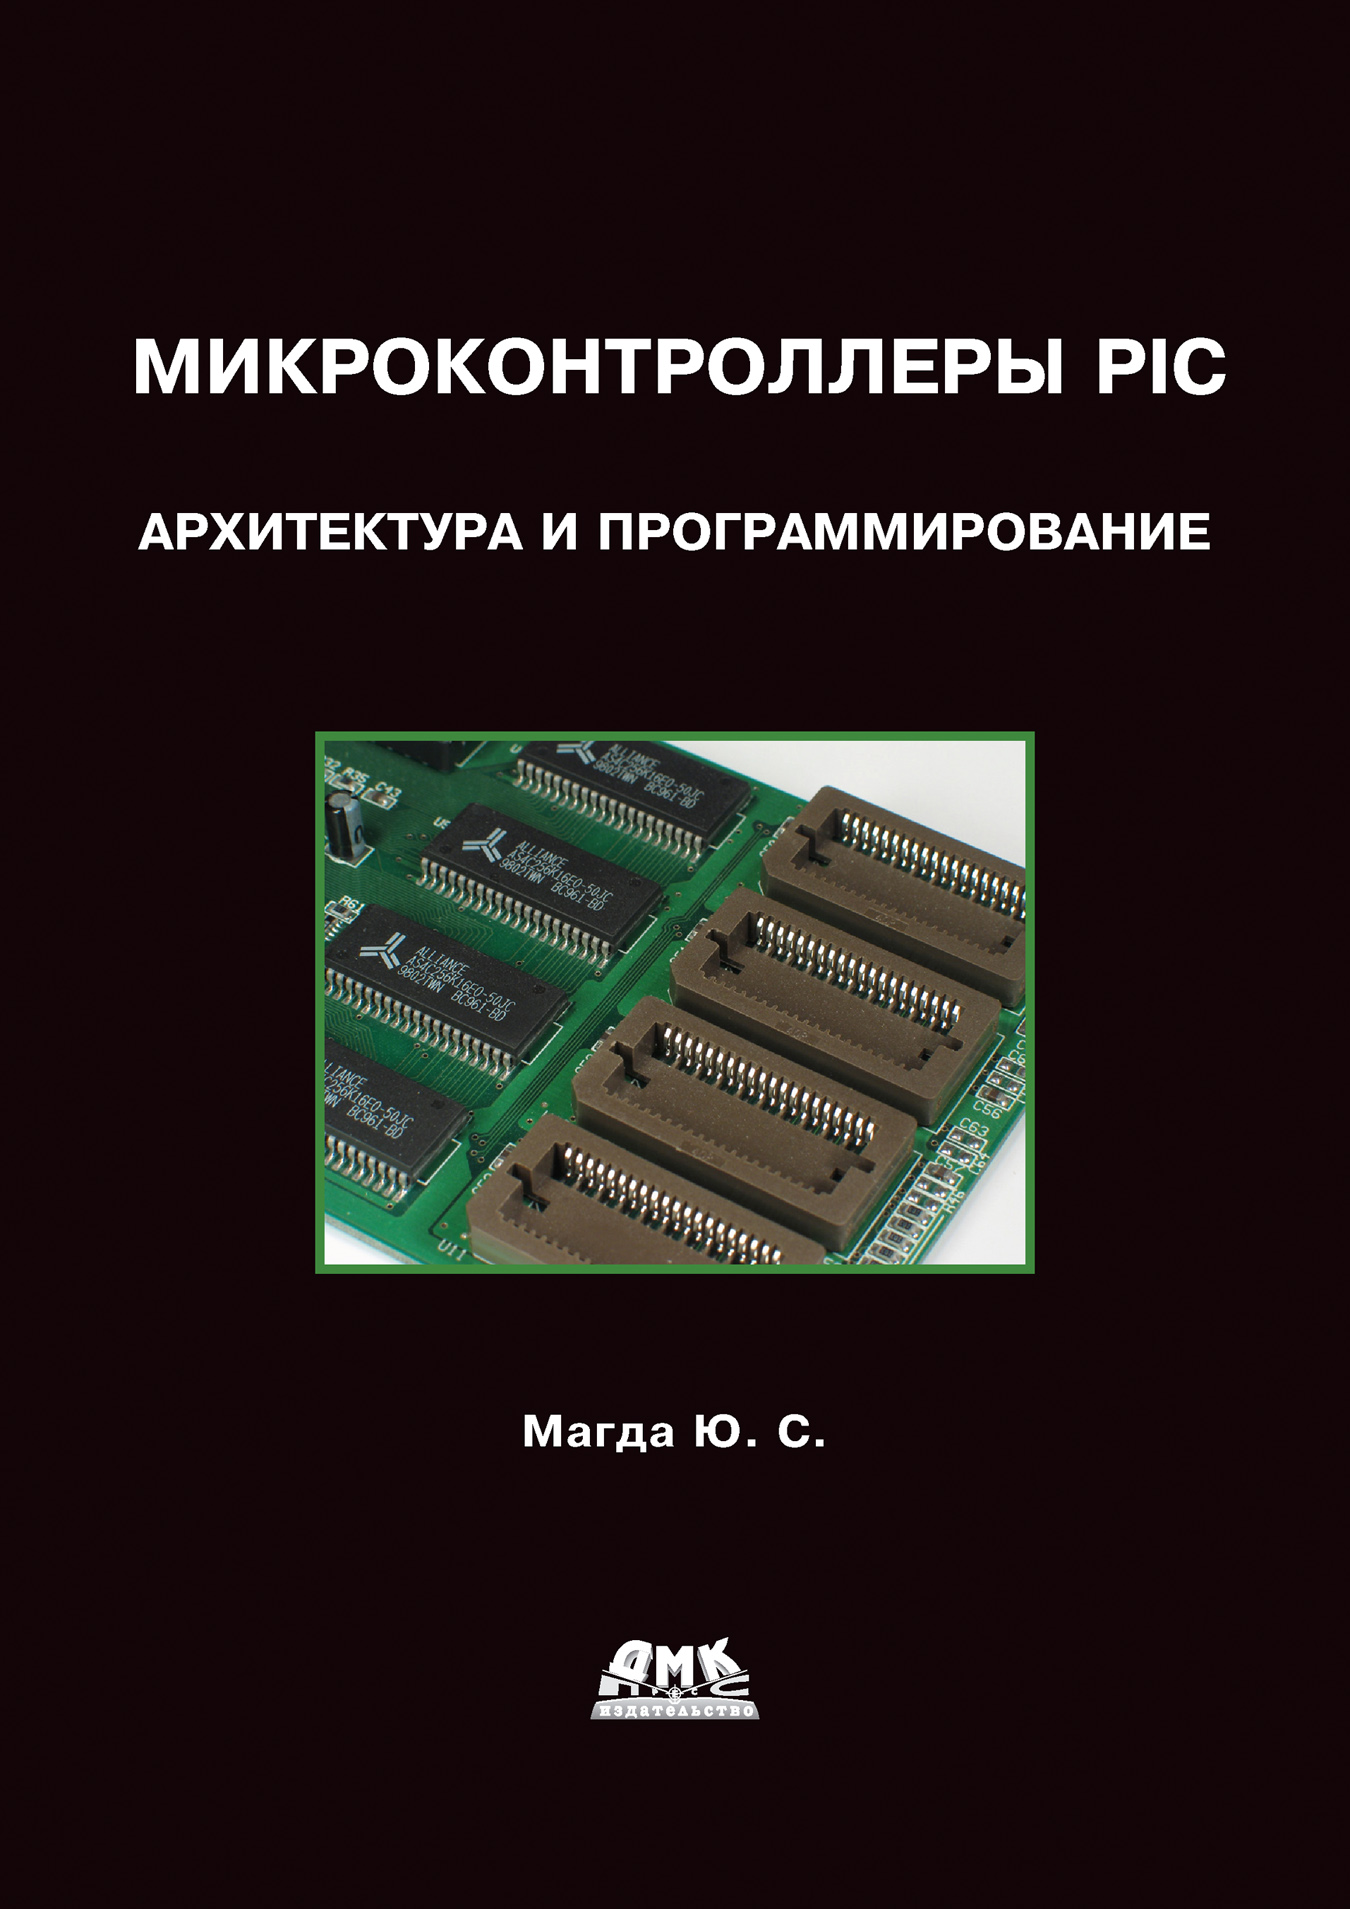 Книга  Микроконтроллеры PIC24: Архитектура и программирование созданная Юрий Магда может относится к жанру компьютерное железо, программирование, техническая литература. Стоимость электронной книги Микроконтроллеры PIC24: Архитектура и программирование с идентификатором 434255 составляет 239.00 руб.